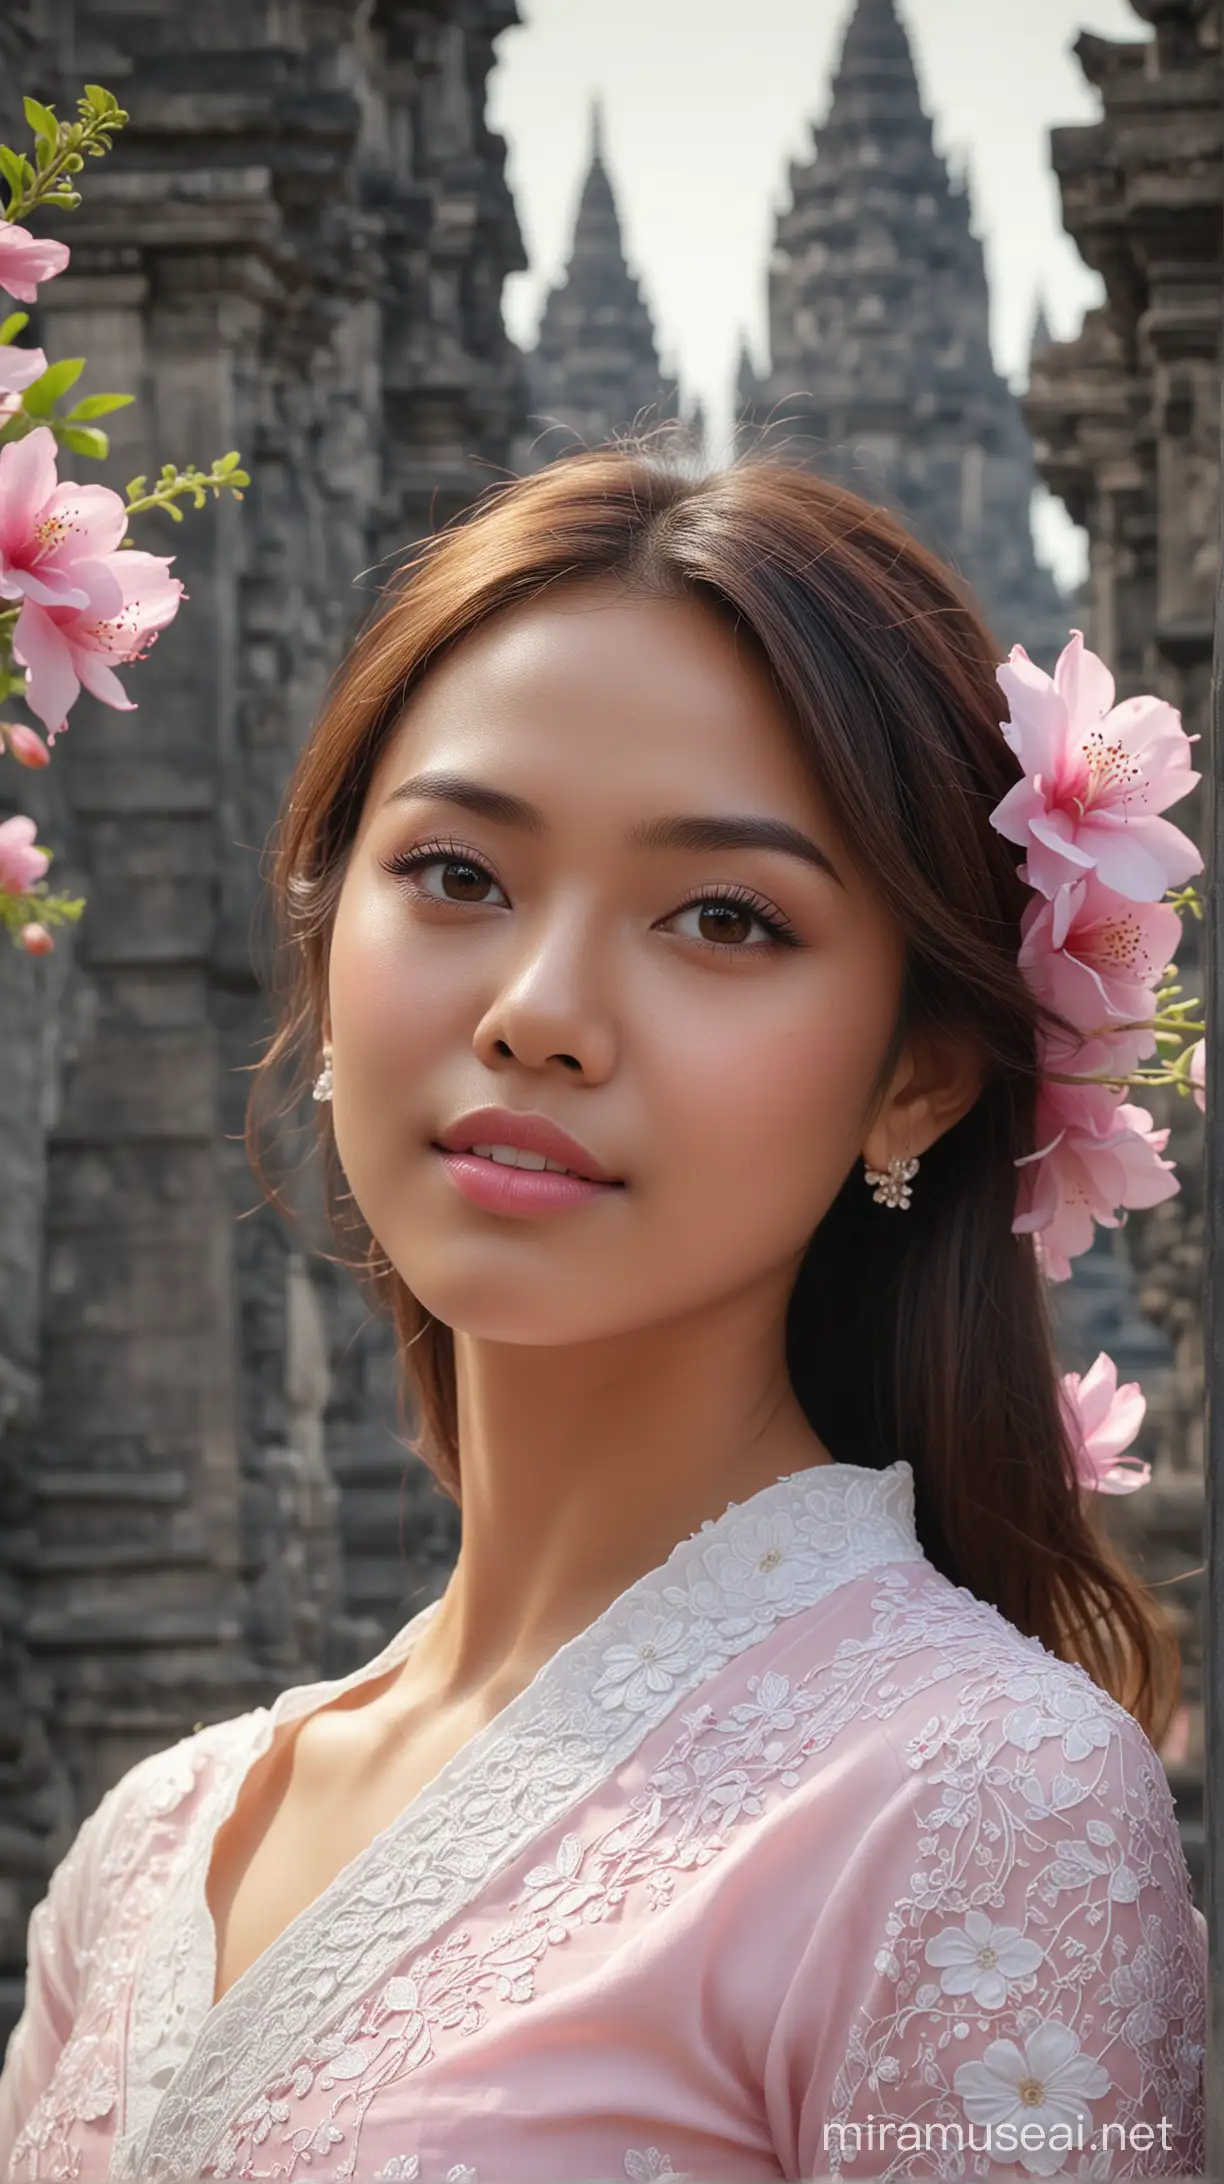 Beautiful Indonesian Girl Portrait at Prambanan Temple